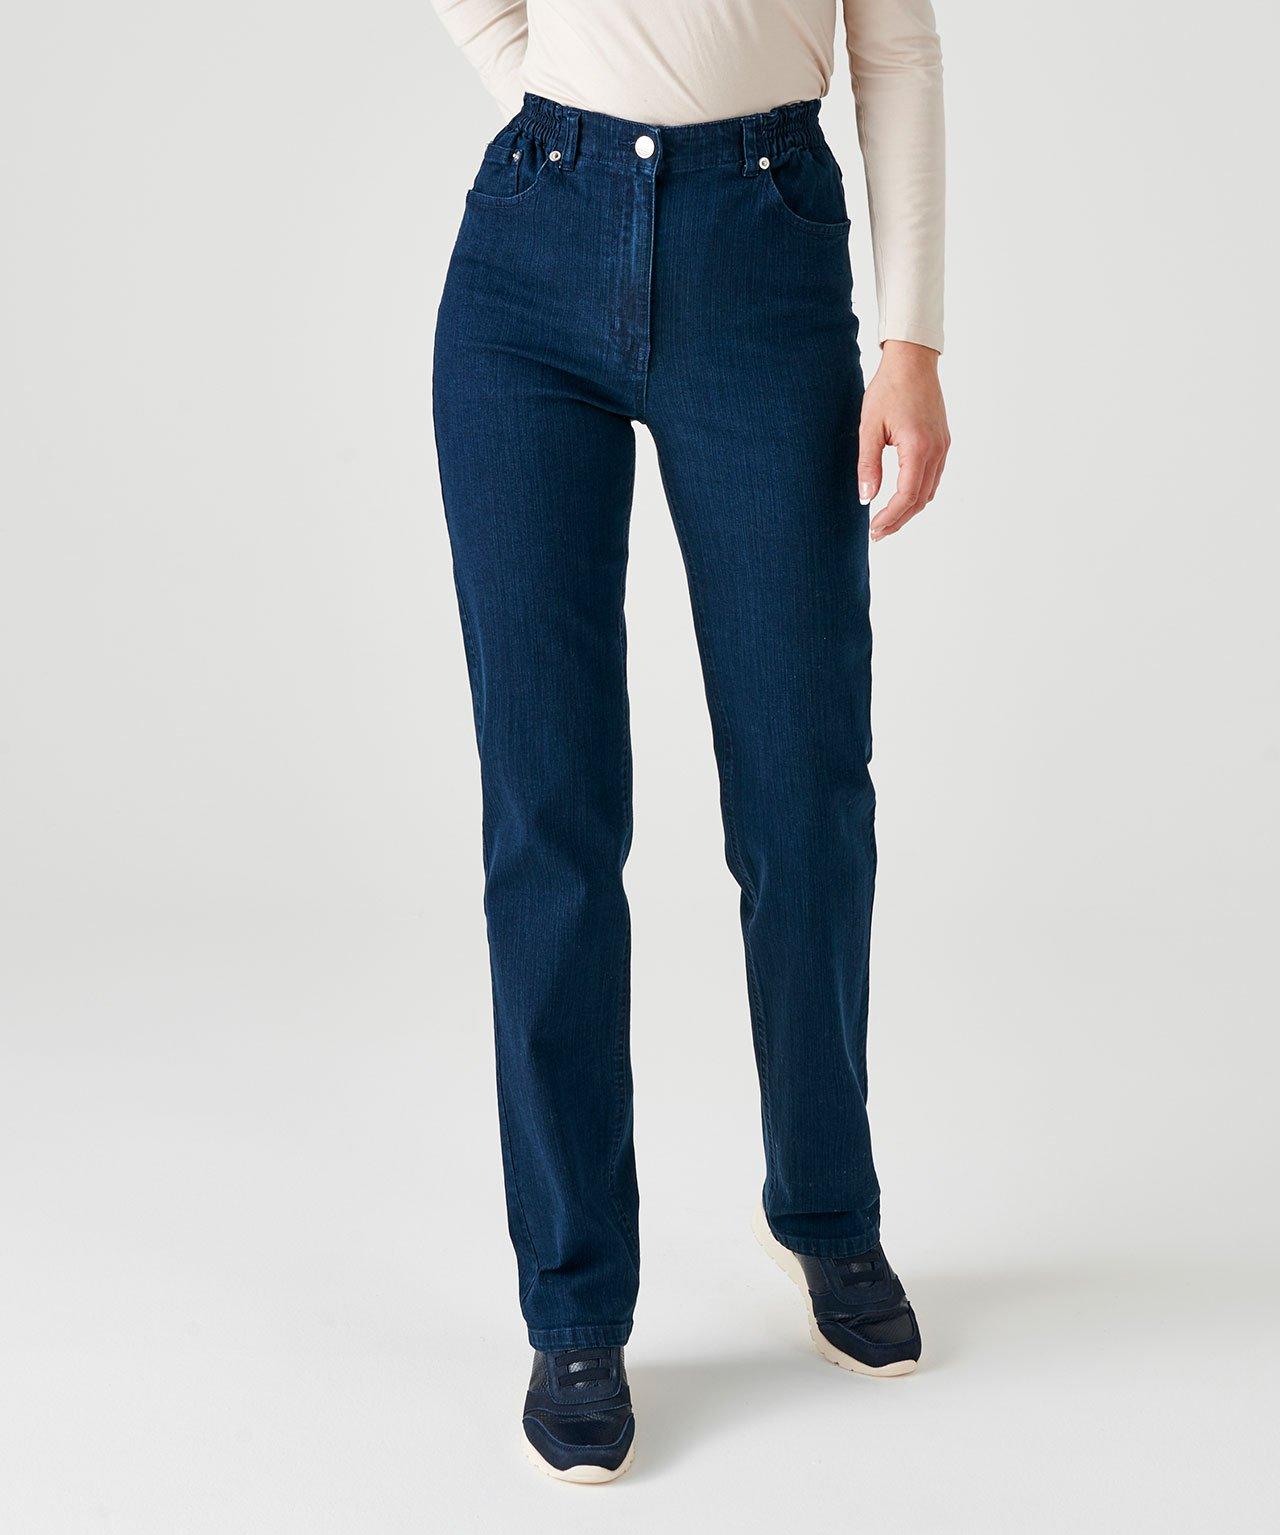 5-pocket-jeans In 2 Körpergrößen. Damen Blau 48 von Damart